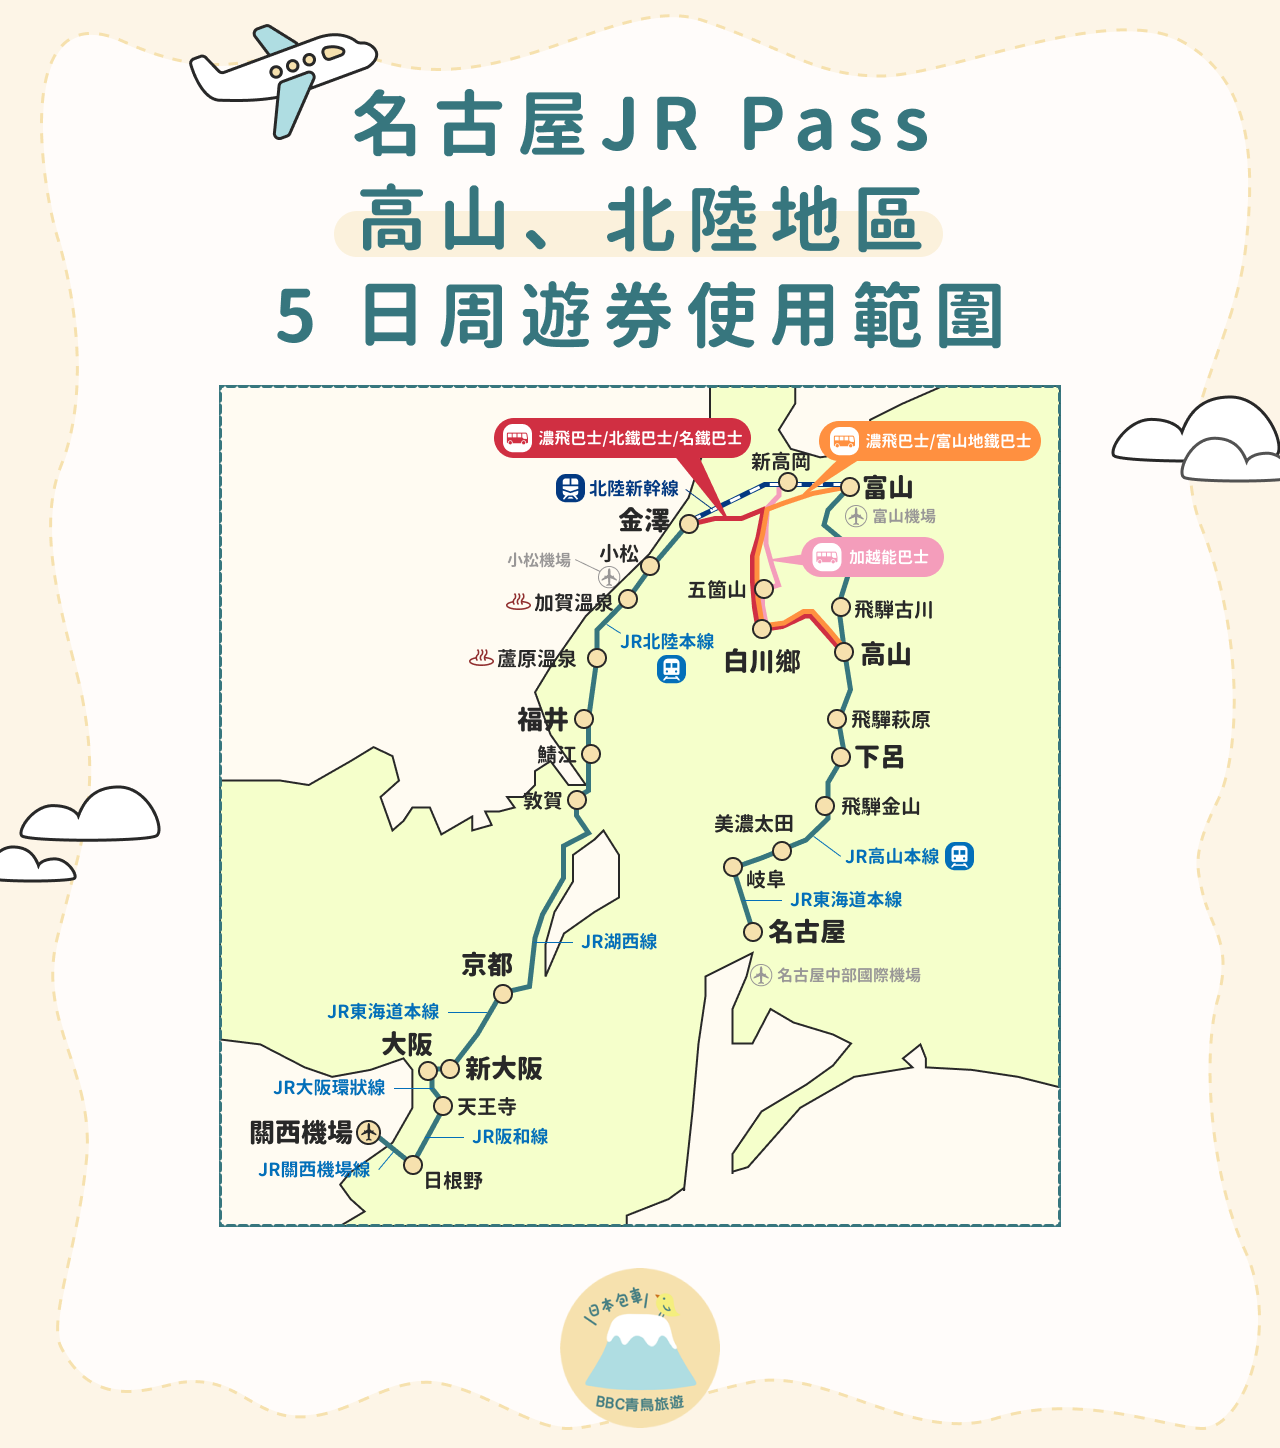 名古屋 JR Pass 高山、北陸地區 5 日周遊券使用範圍